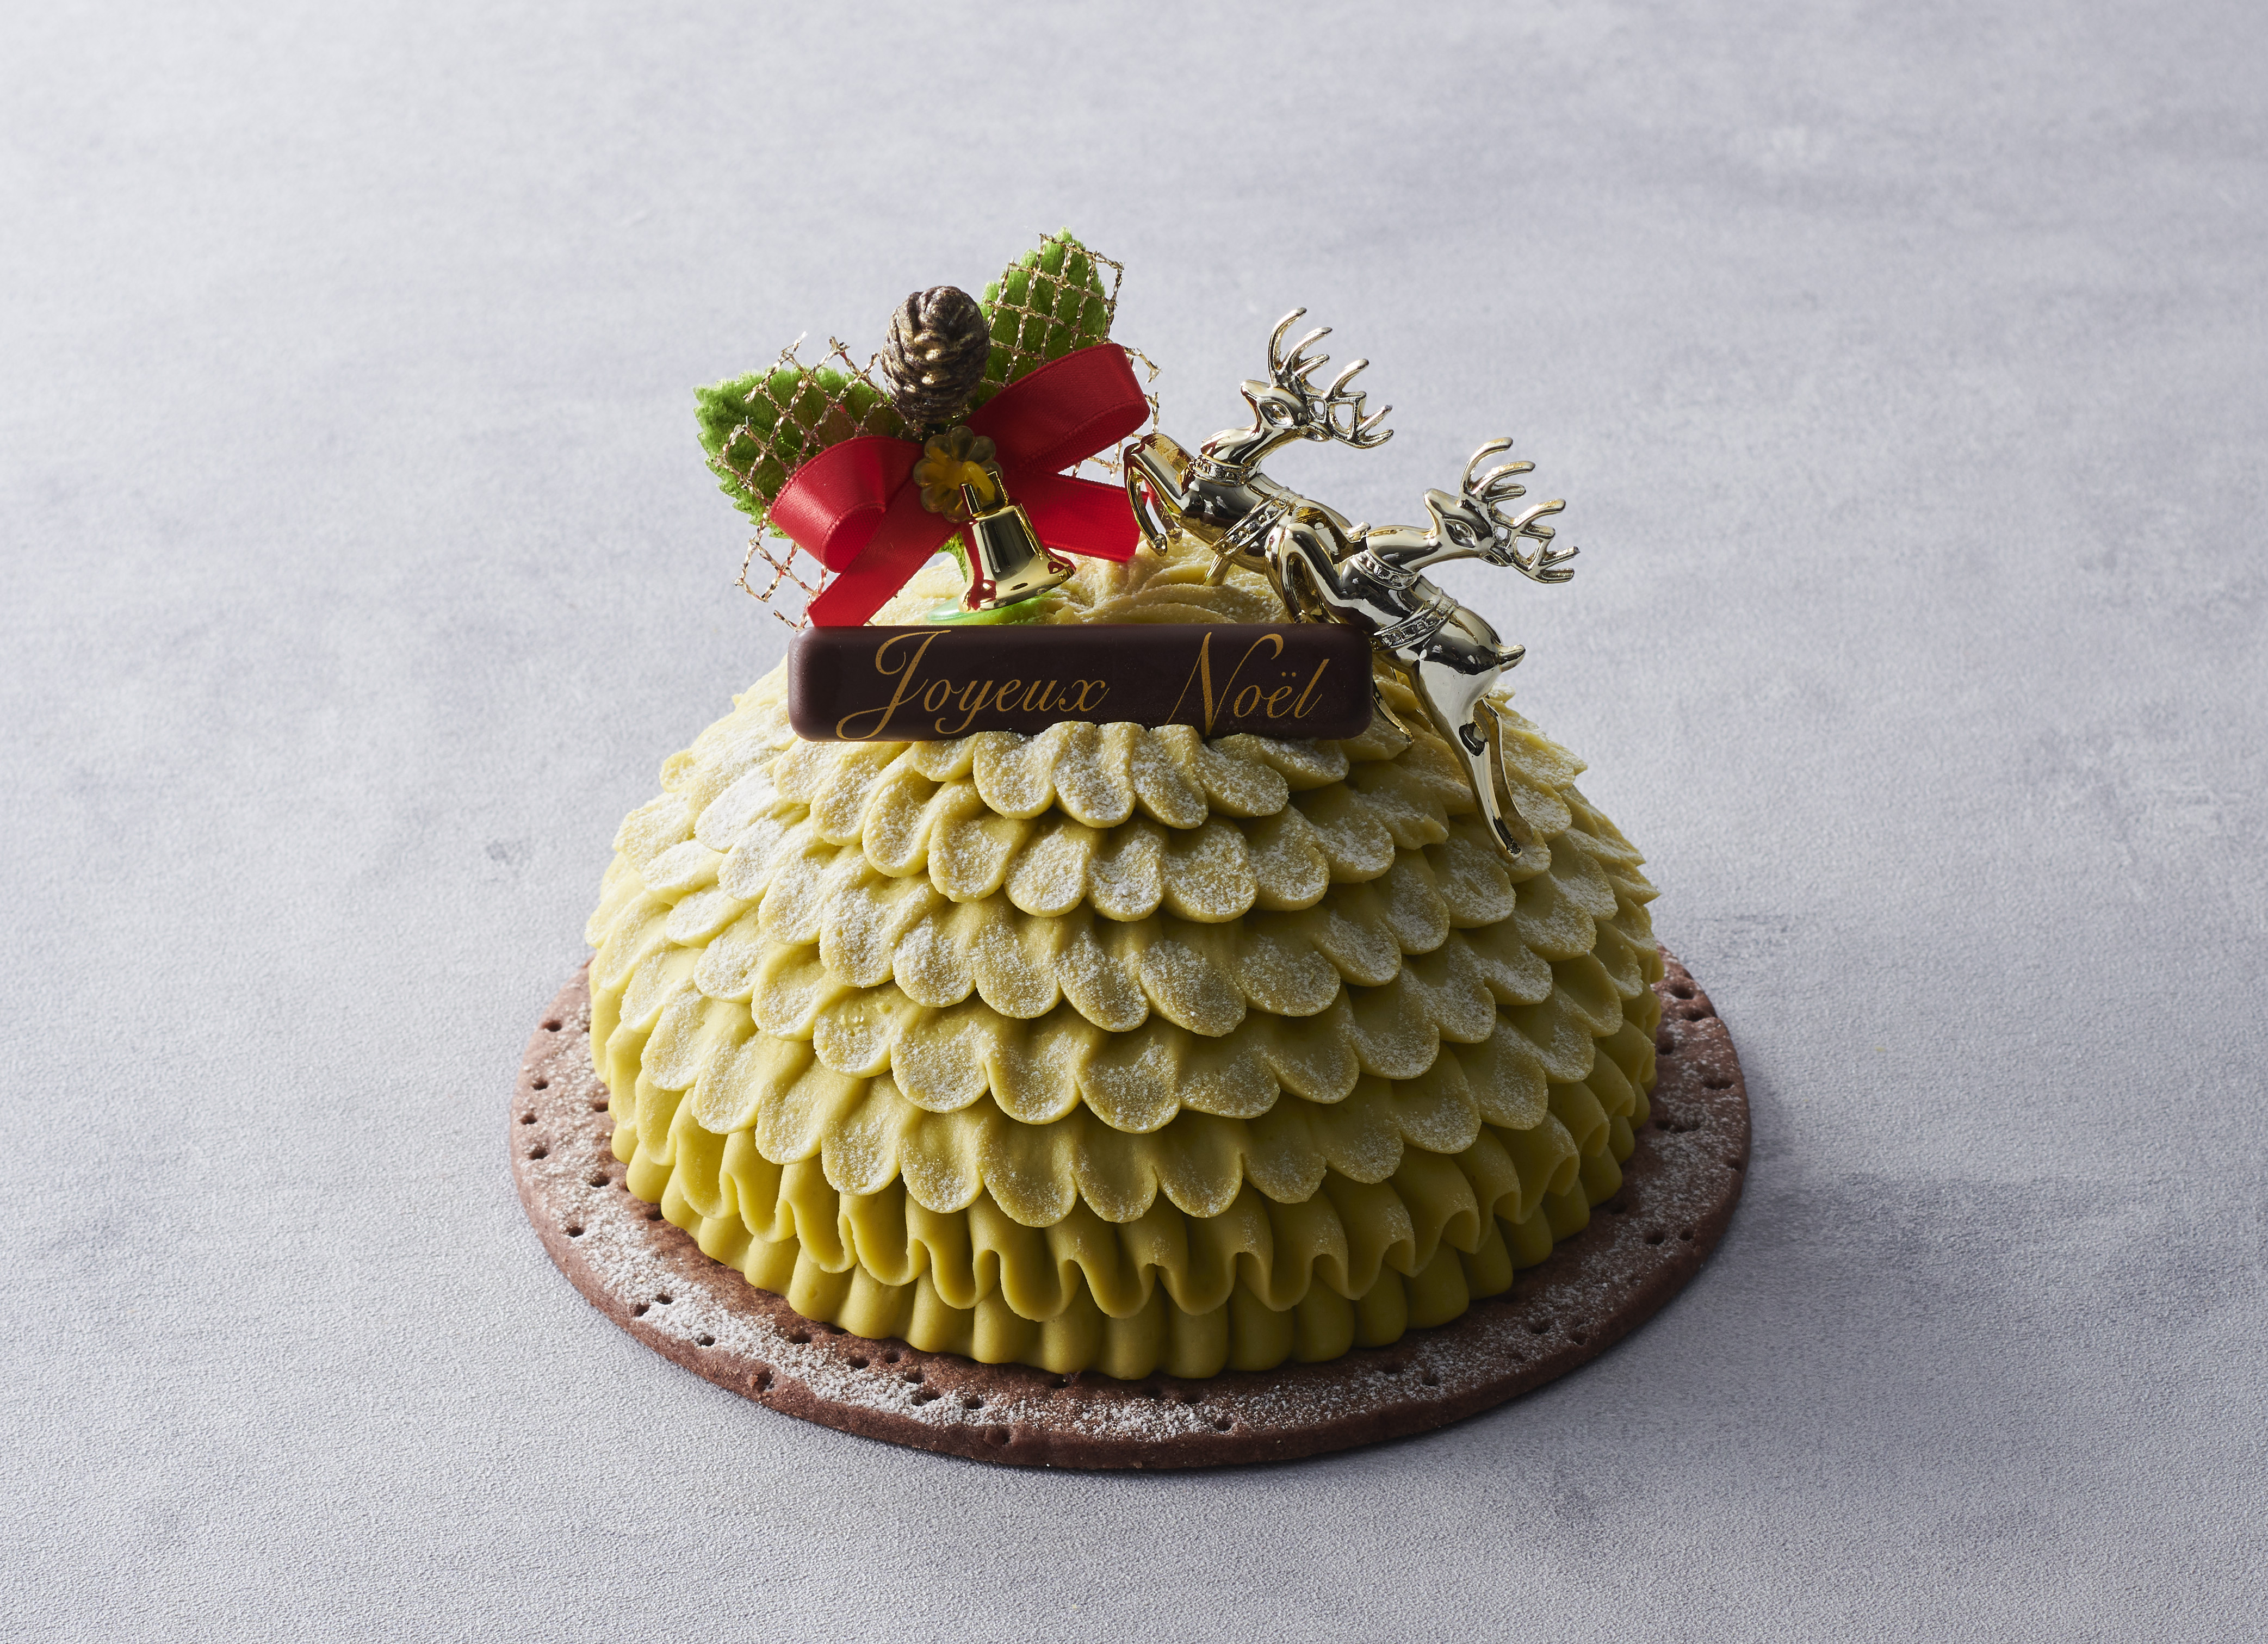 ベルギー王室御用達チョコレートブランド「ヴィタメール」がお届けする2021年クリスマスケーキコレクション10月中旬よりご予約受付開始のサブ画像5